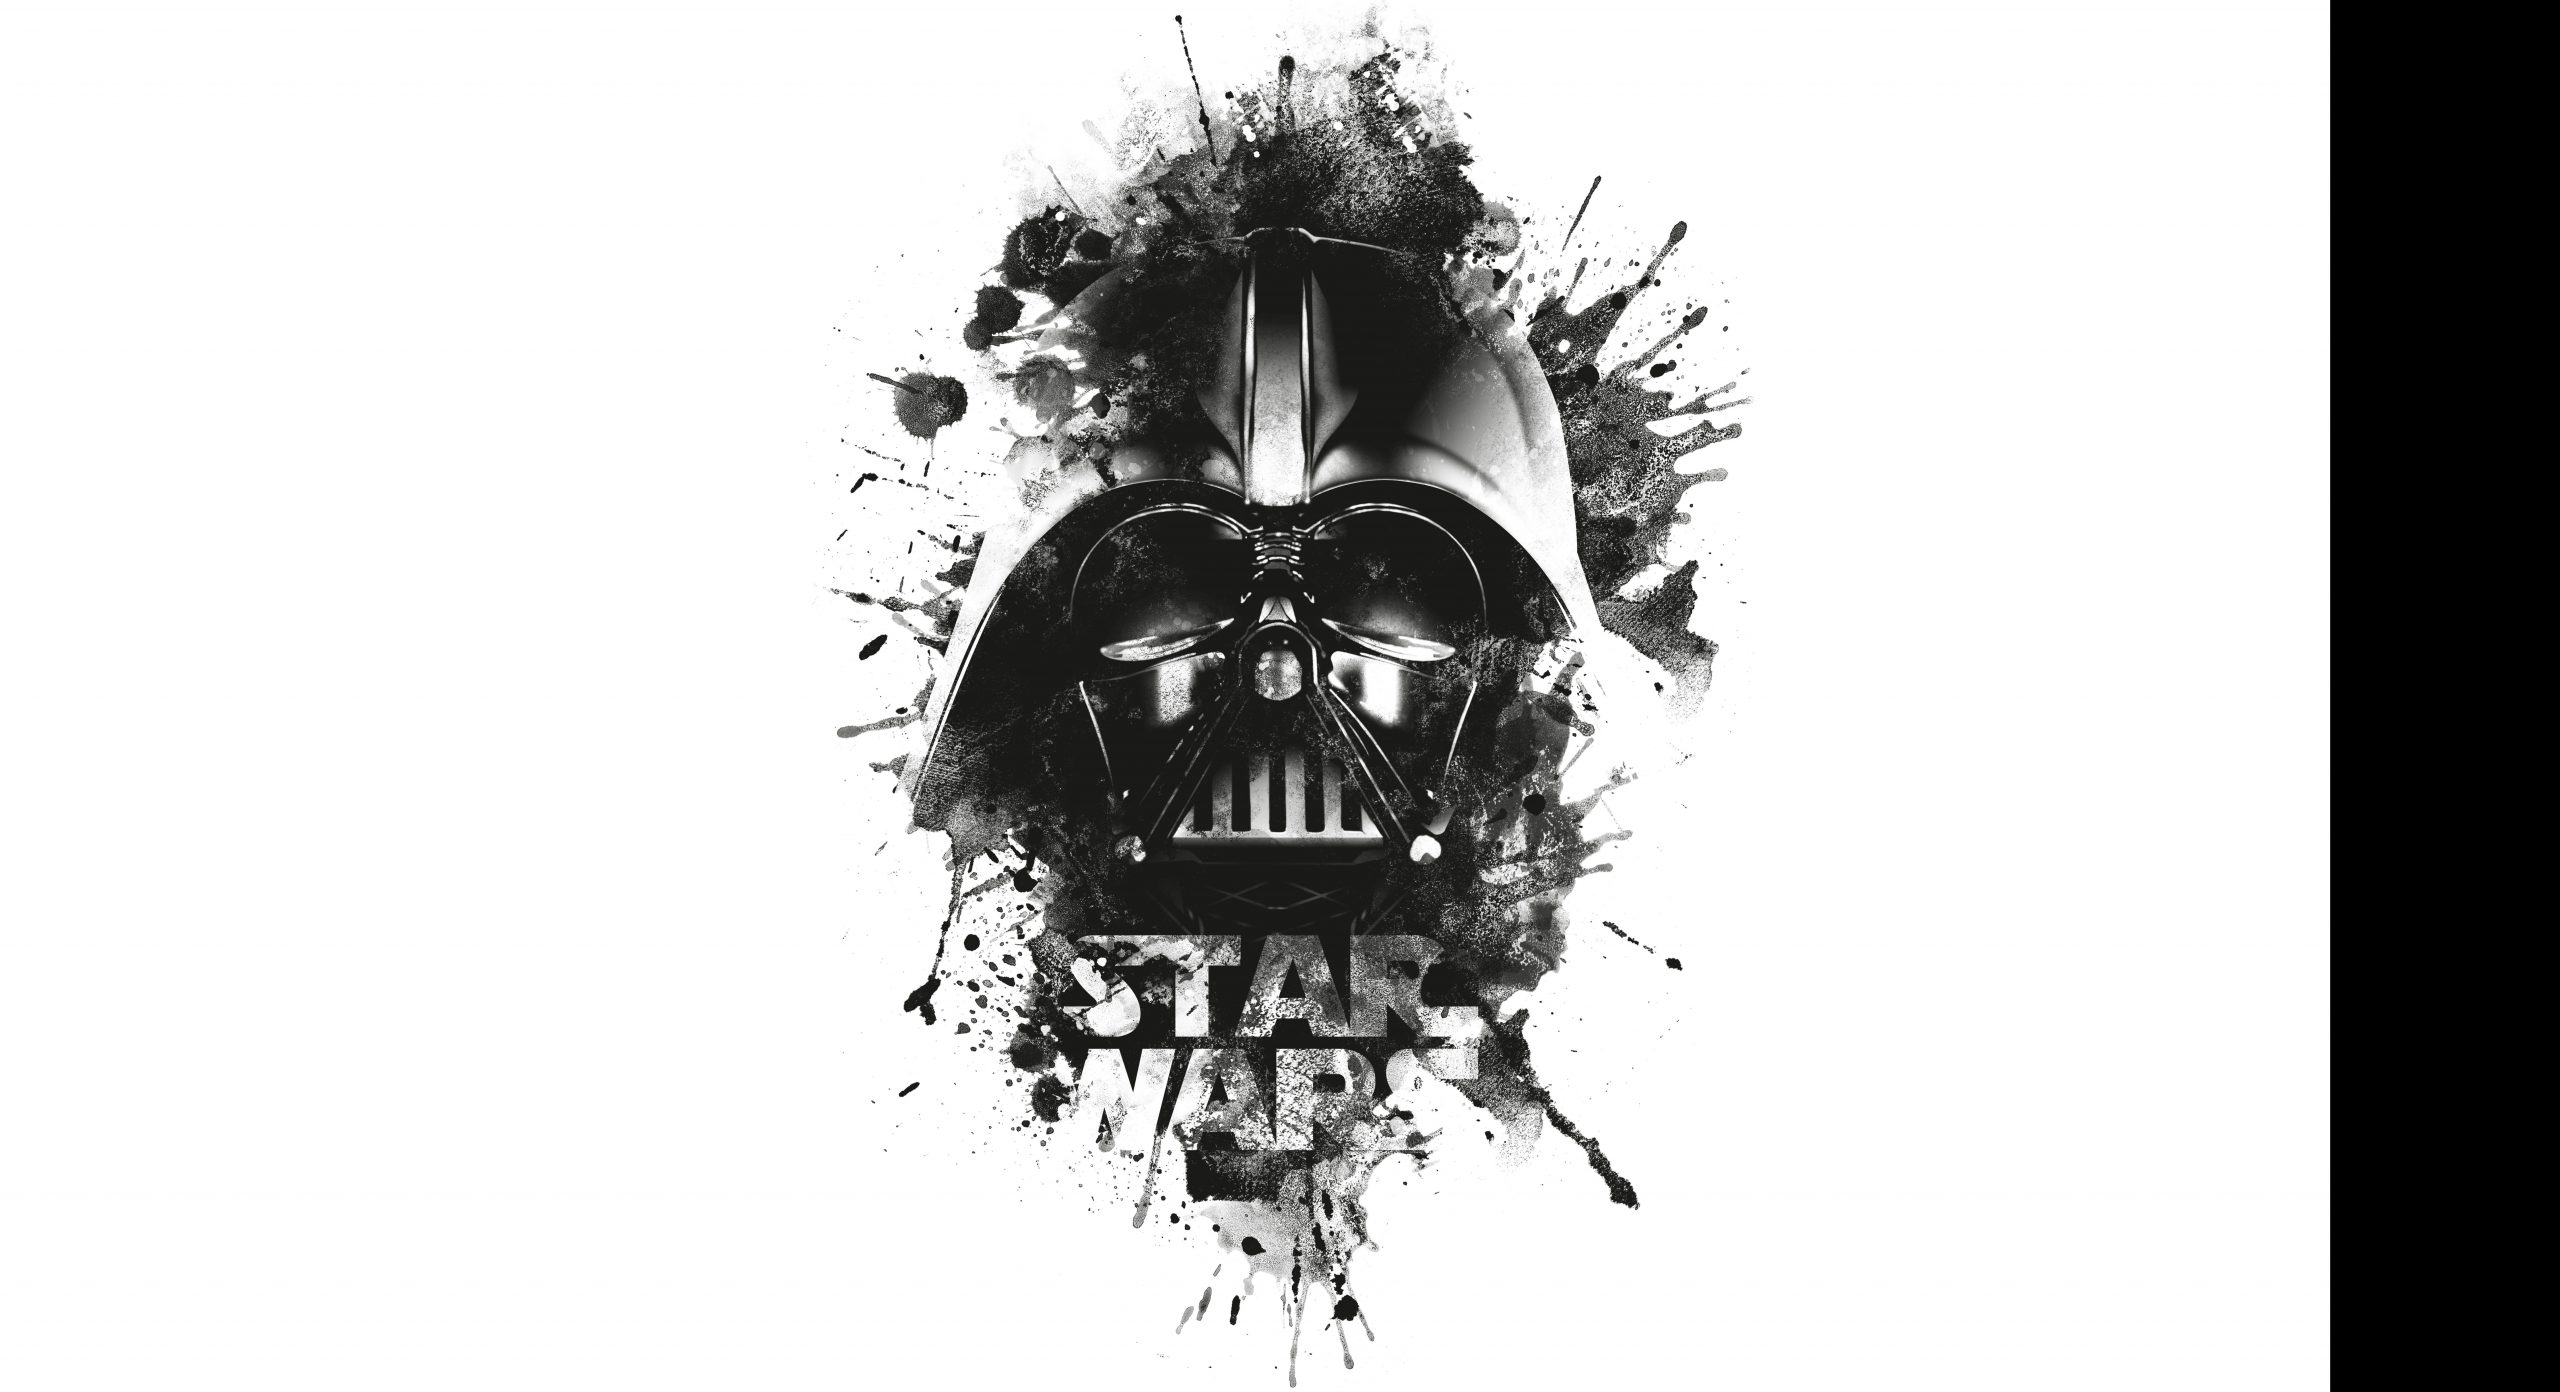 Wallpaper Star Wars Darth Vader Wallpaper Logo Black Wallpaper For You Hd Wallpaper For Desktop Mobile